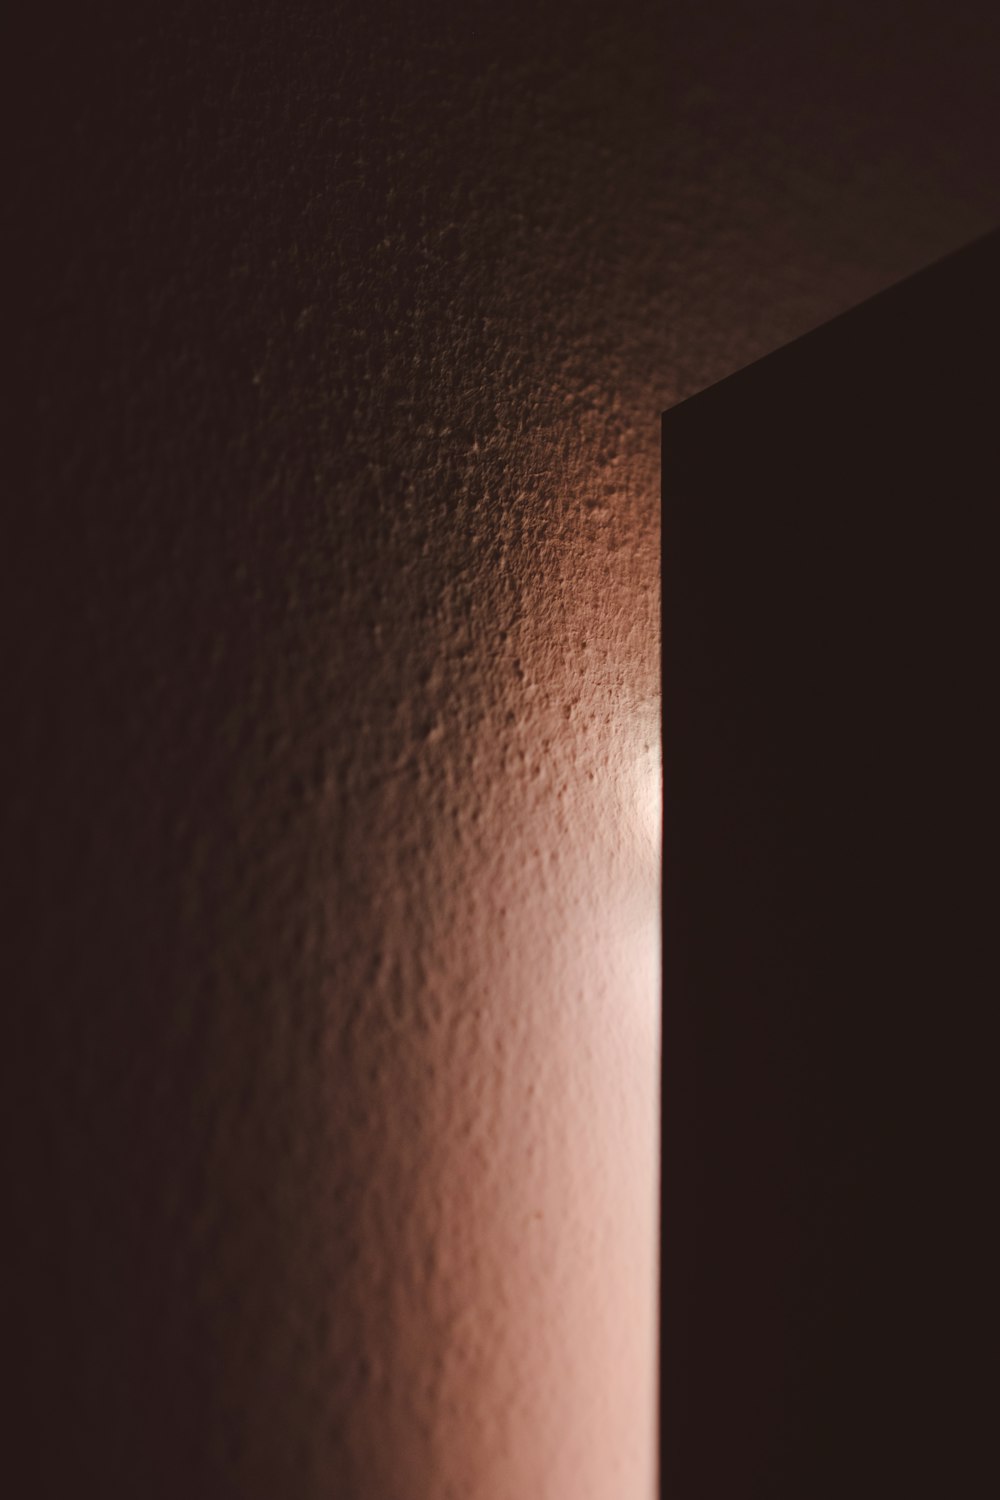 an open door in a dark room with light coming in